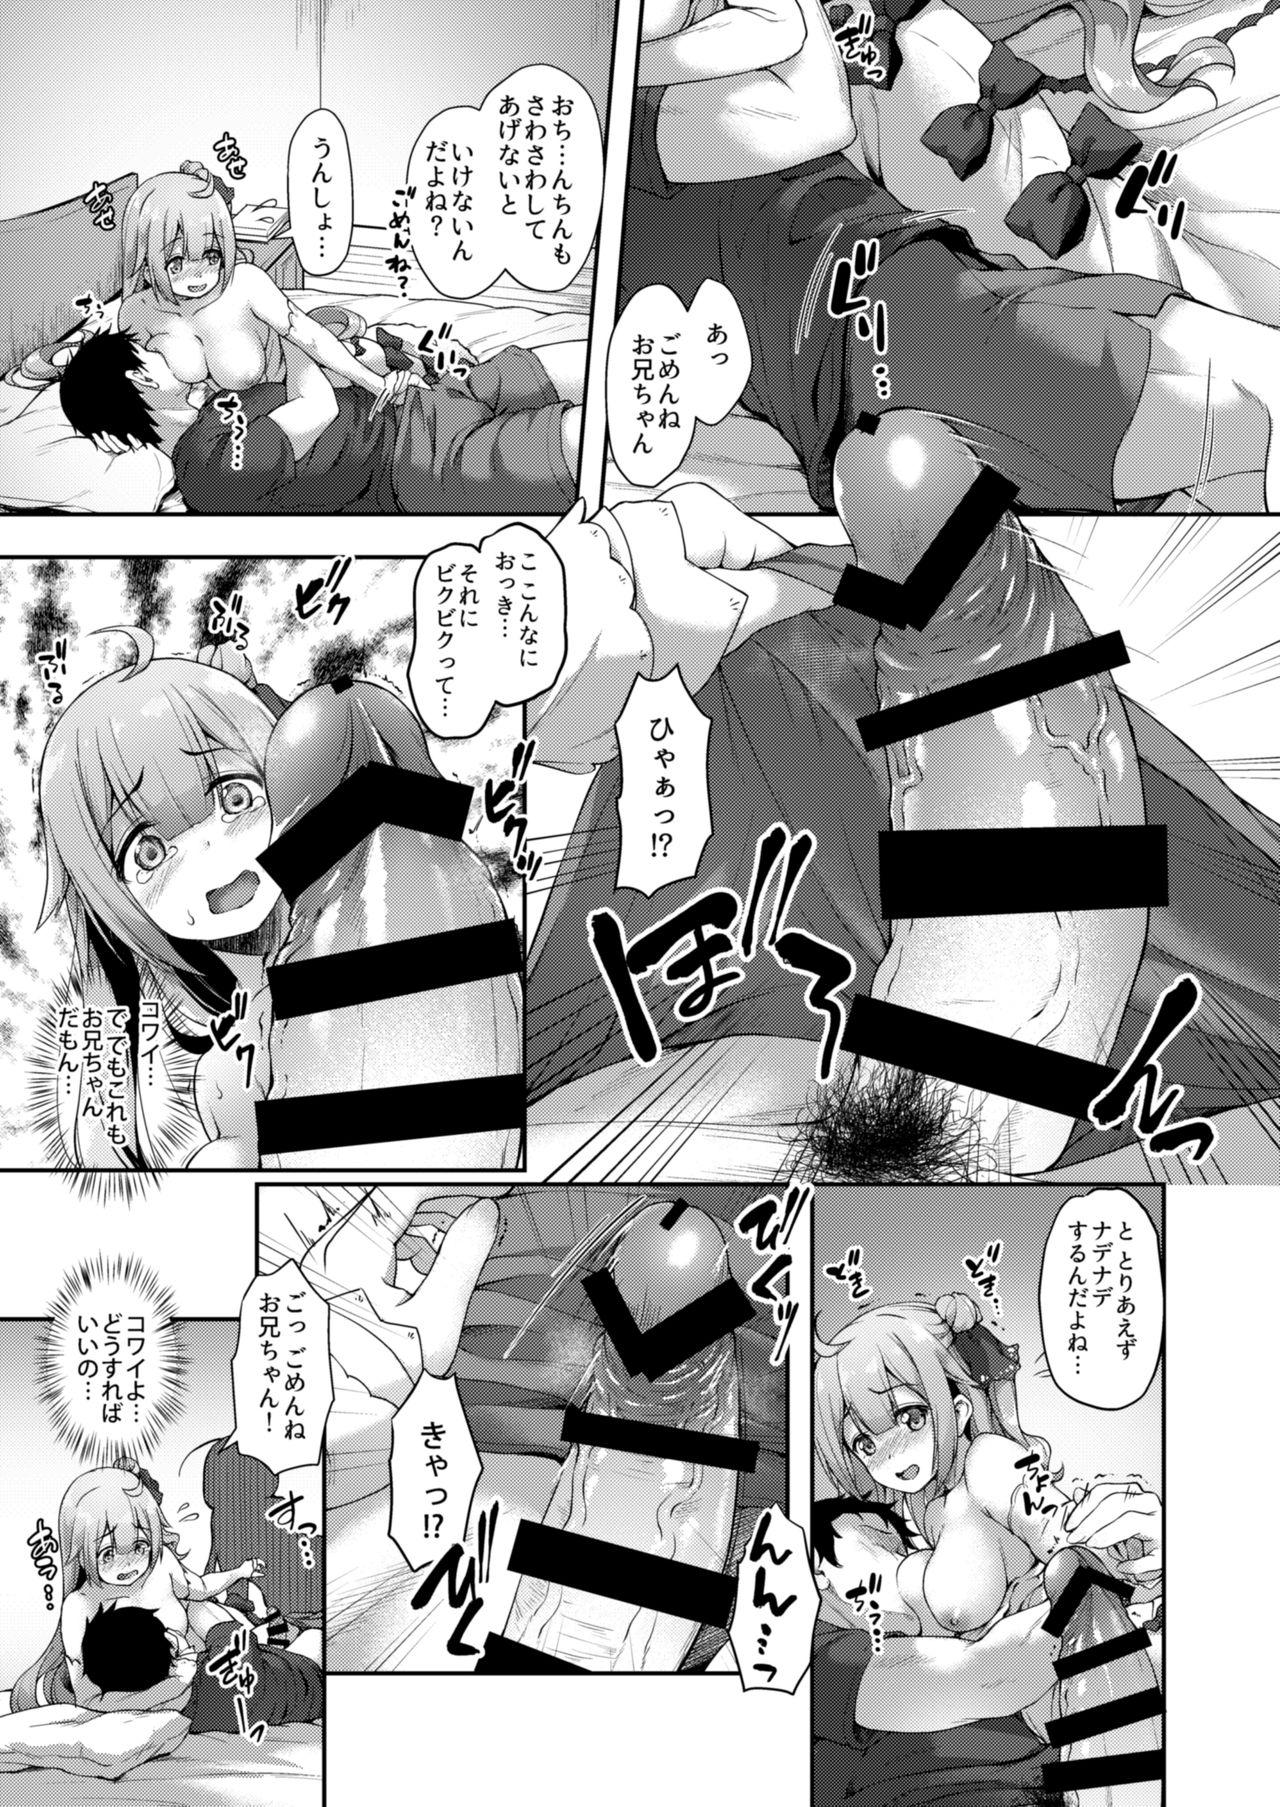 Two Watashi no Kawaii Onii-chan - Azur lane Sex - Page 10